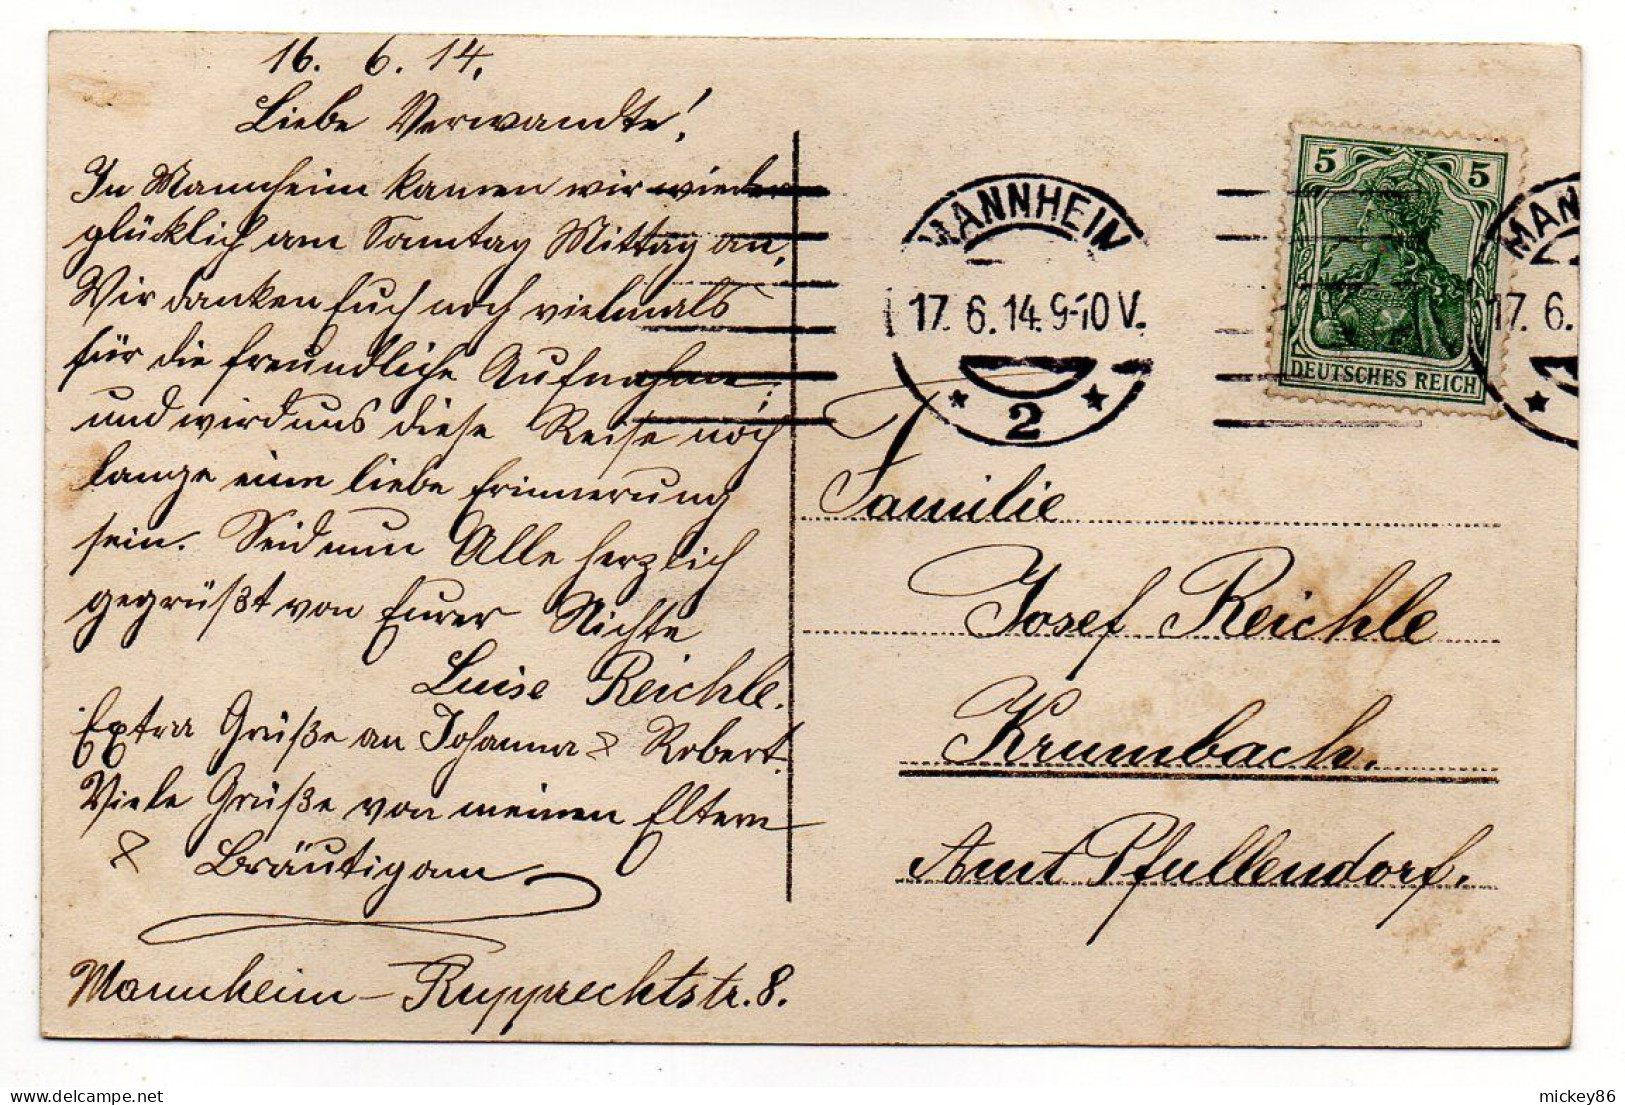 Allemagne-- MANNHEIM --1914 --  Schillerplatz Mit Jesuitenkirche ...timbre.....cachet - Mannheim